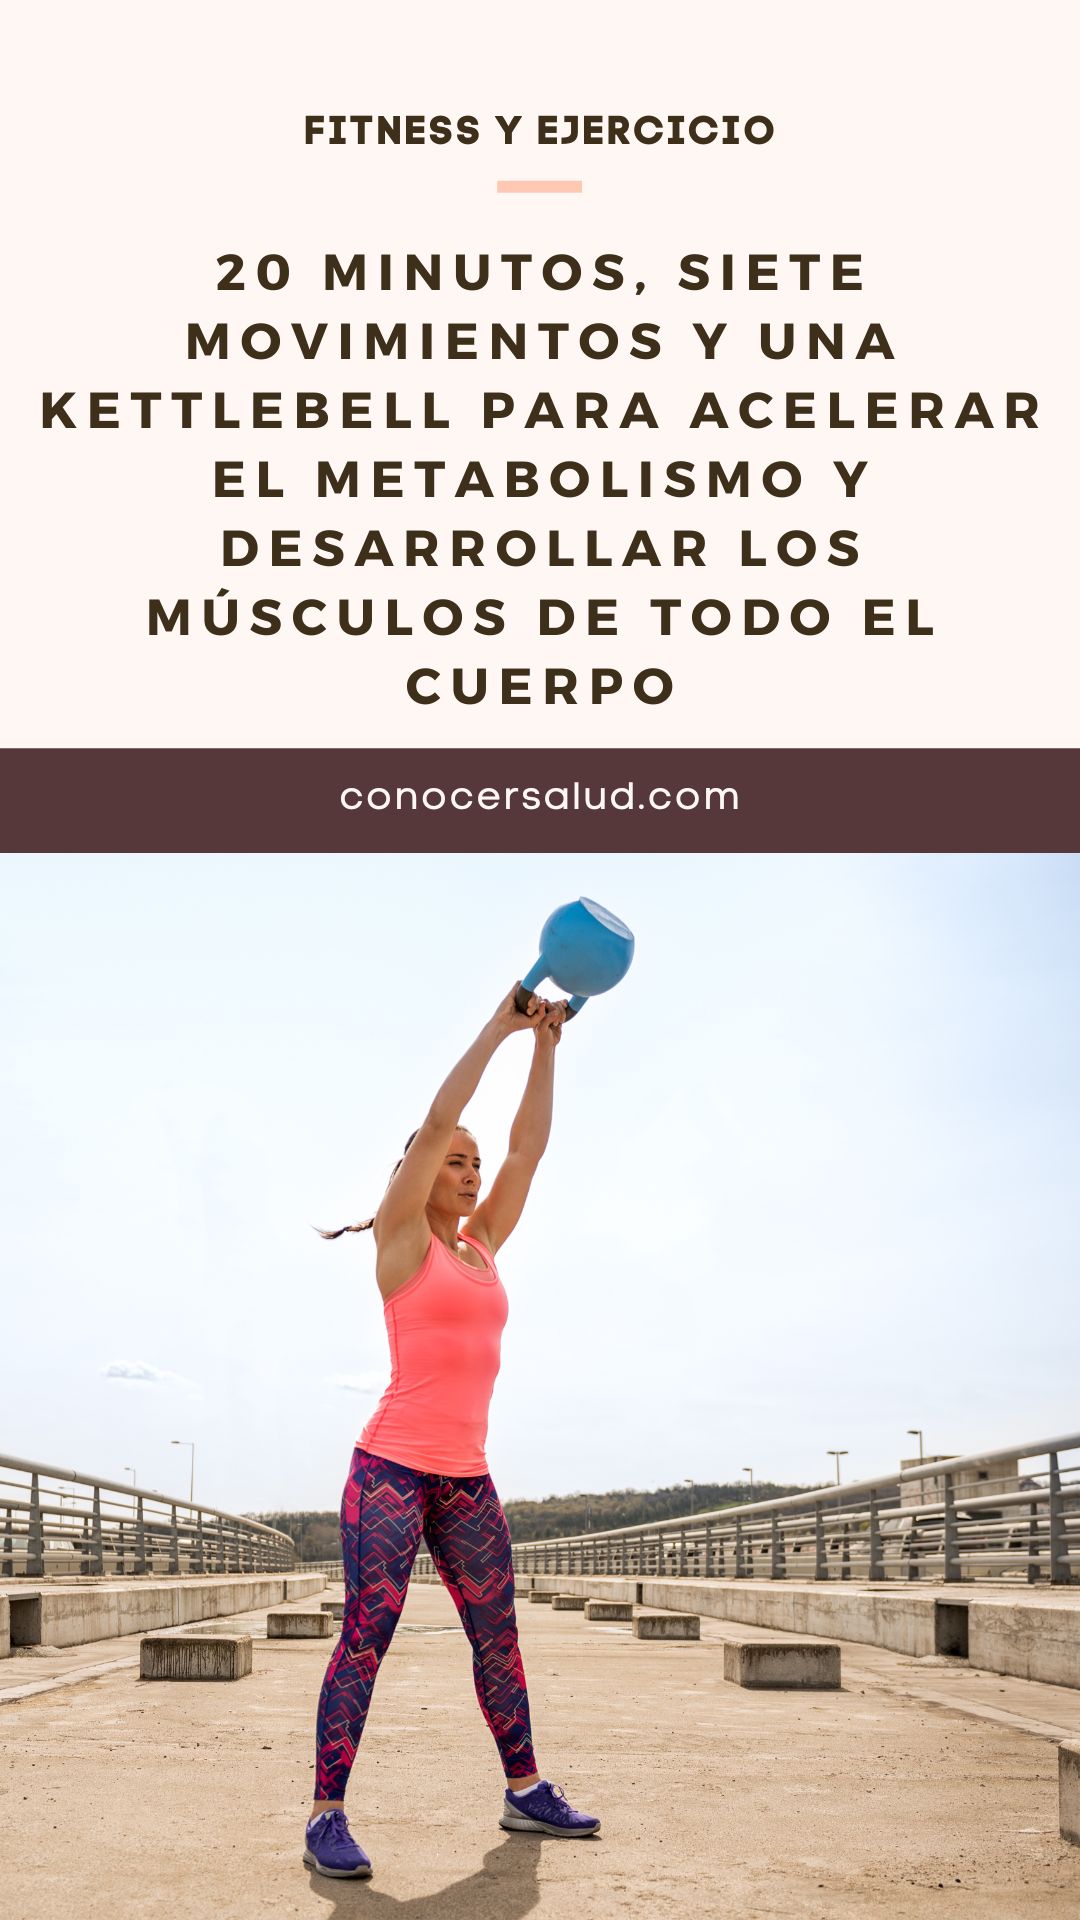 20 minutos, siete movimientos y una kettlebell para acelerar el metabolismo y desarrollar los músculos de todo el cuerpo